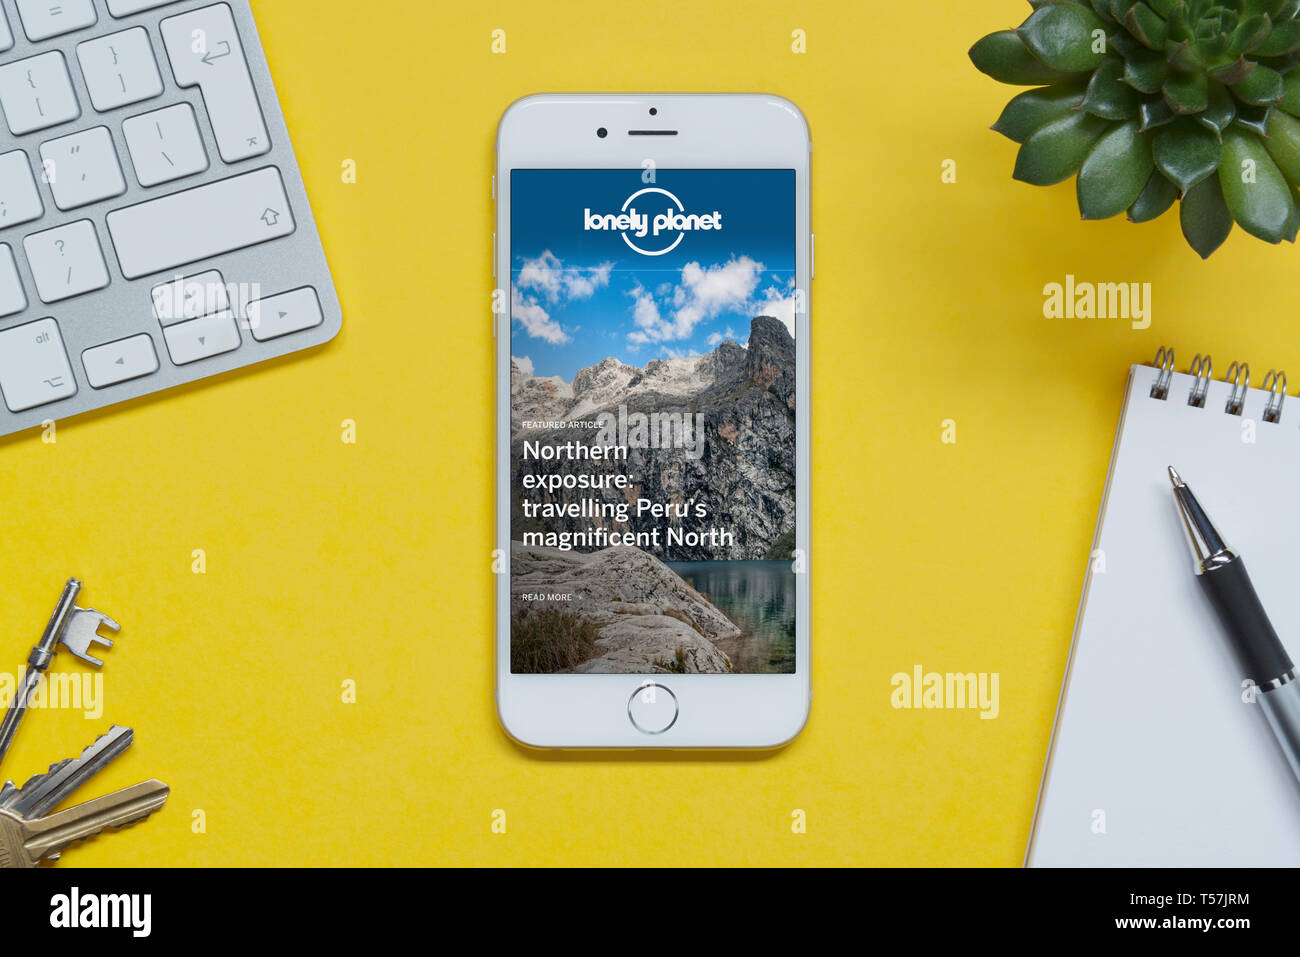 Ein iPhone mit dem Lonely Planet website ruht auf einem gelben Hintergrund Tabelle mit einer Tastatur, Tasten, Notepad und Anlage (nur redaktionelle Nutzung). Stockfoto